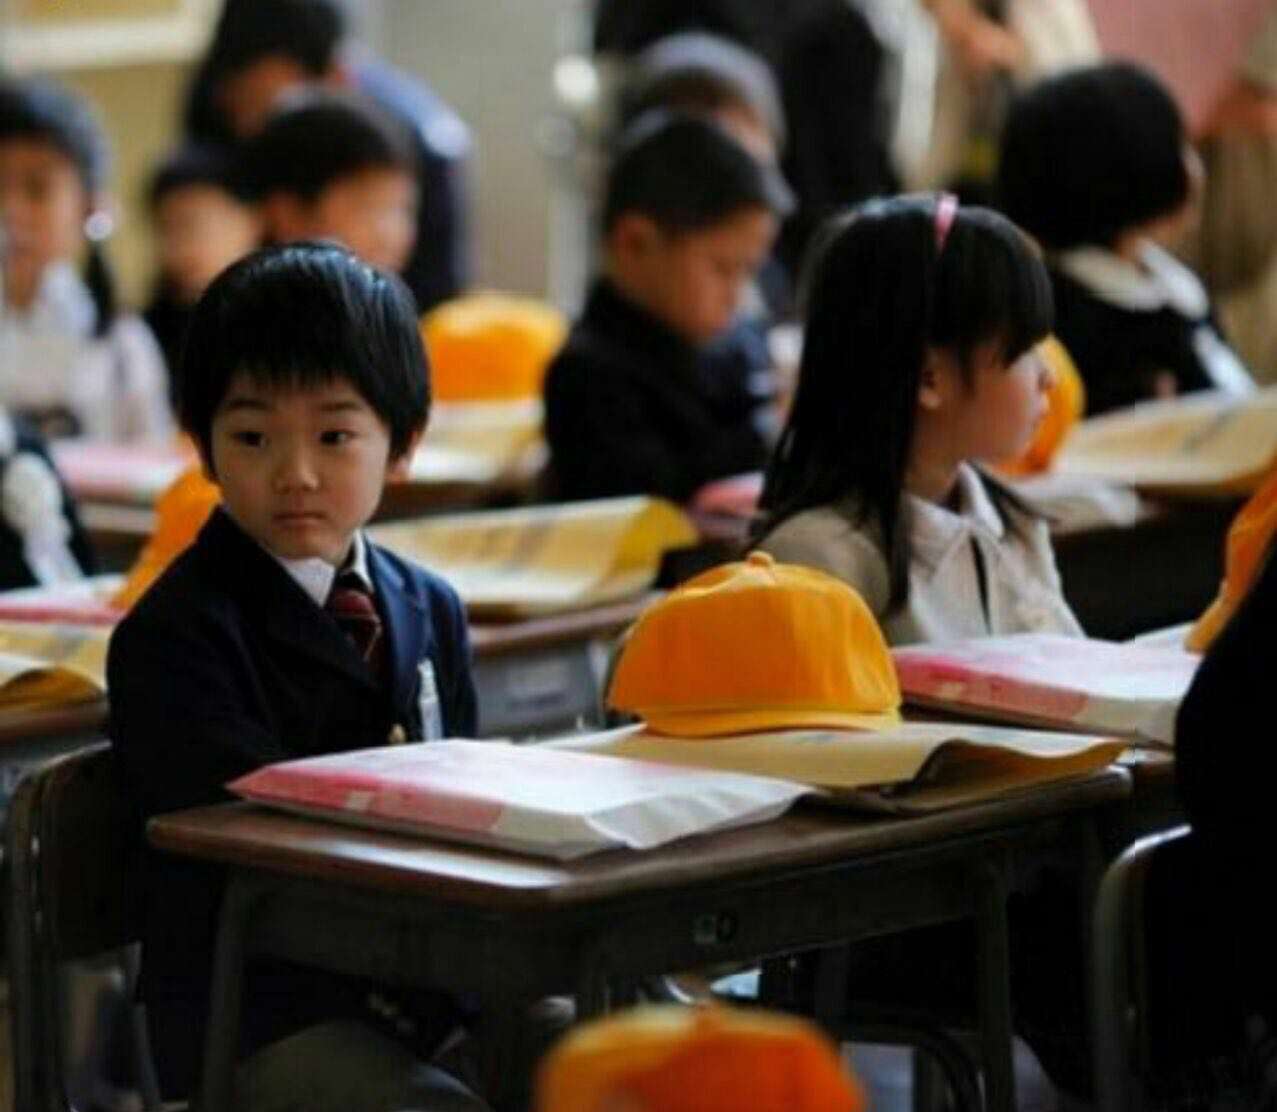 دانش آموزان ژاپنى تا کلاس چهارم هیچ امتحانى نمى دهند و فقط به یادگیرى عادات و رفتارهاى اجتماعى مى پردازند.